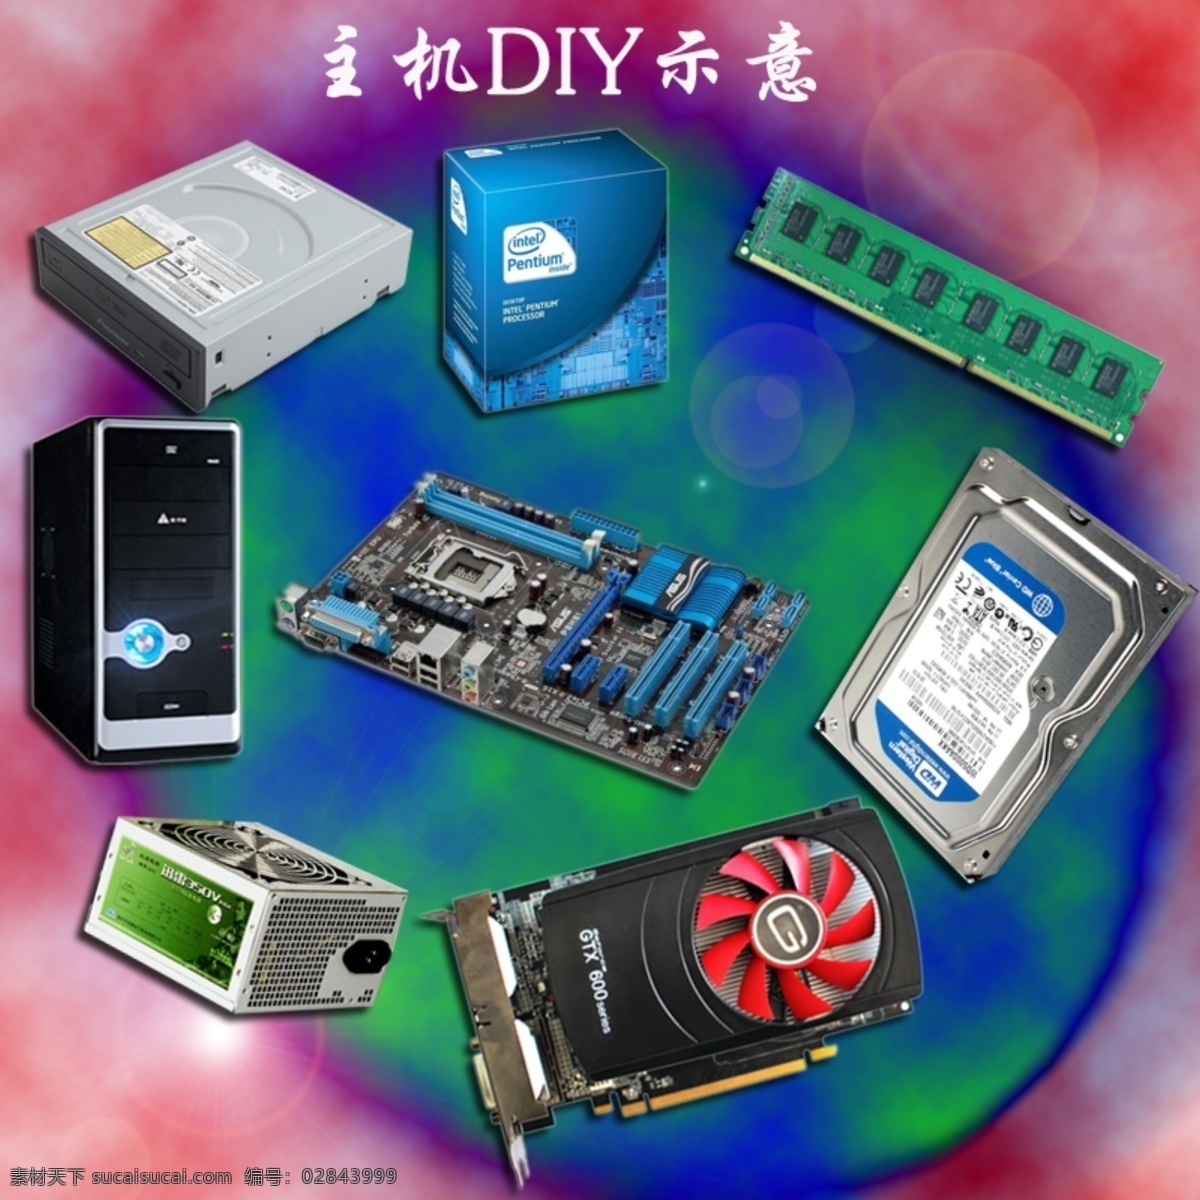 主机 diy 示意图 组装机 电脑 组装电脑 电脑海报 中文模板 网页模板 源文件